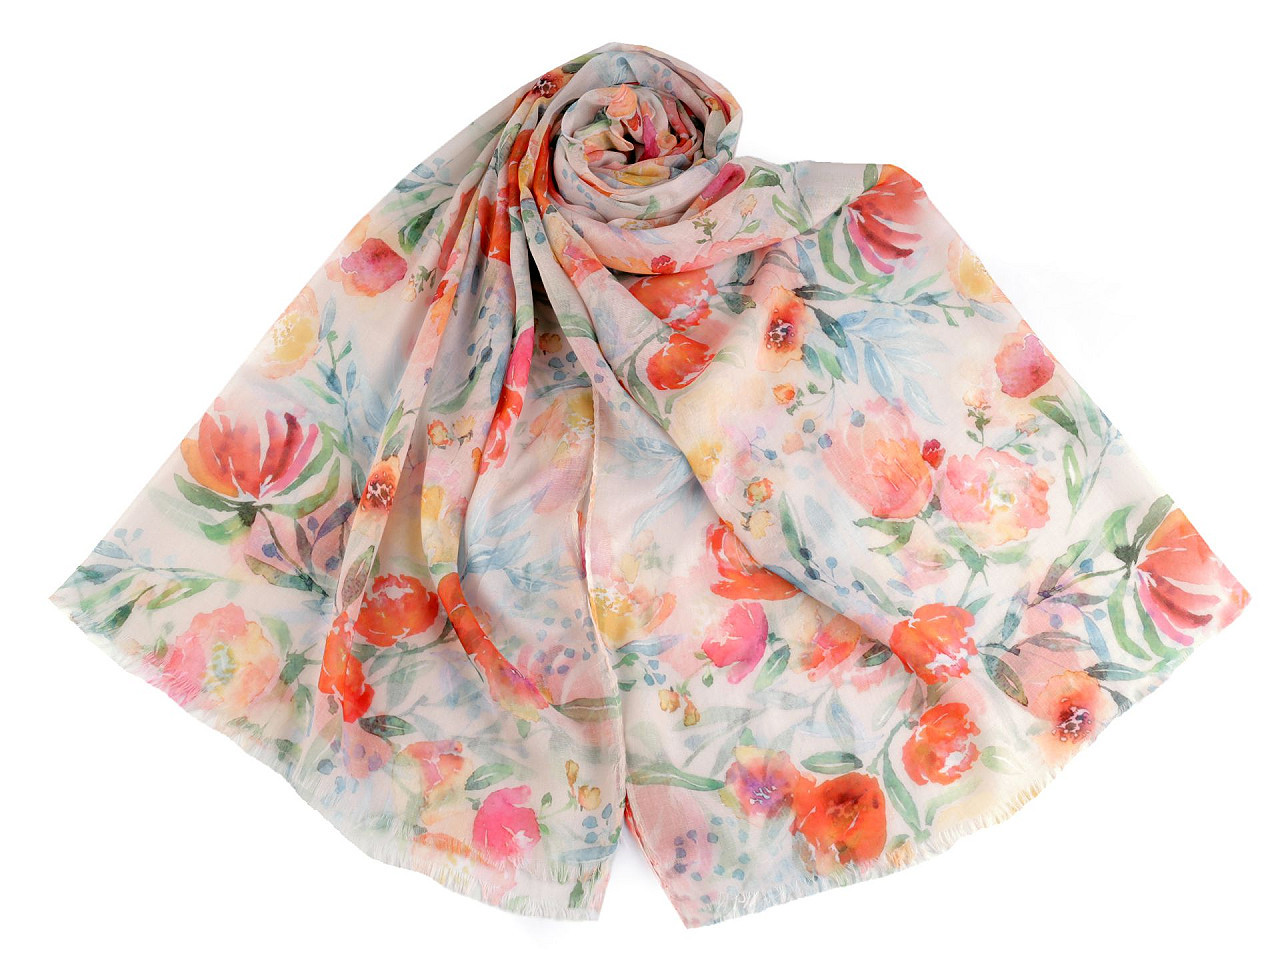 Letní šátek / šála s malovanými květy 70x180 cm, barva 3 lososová